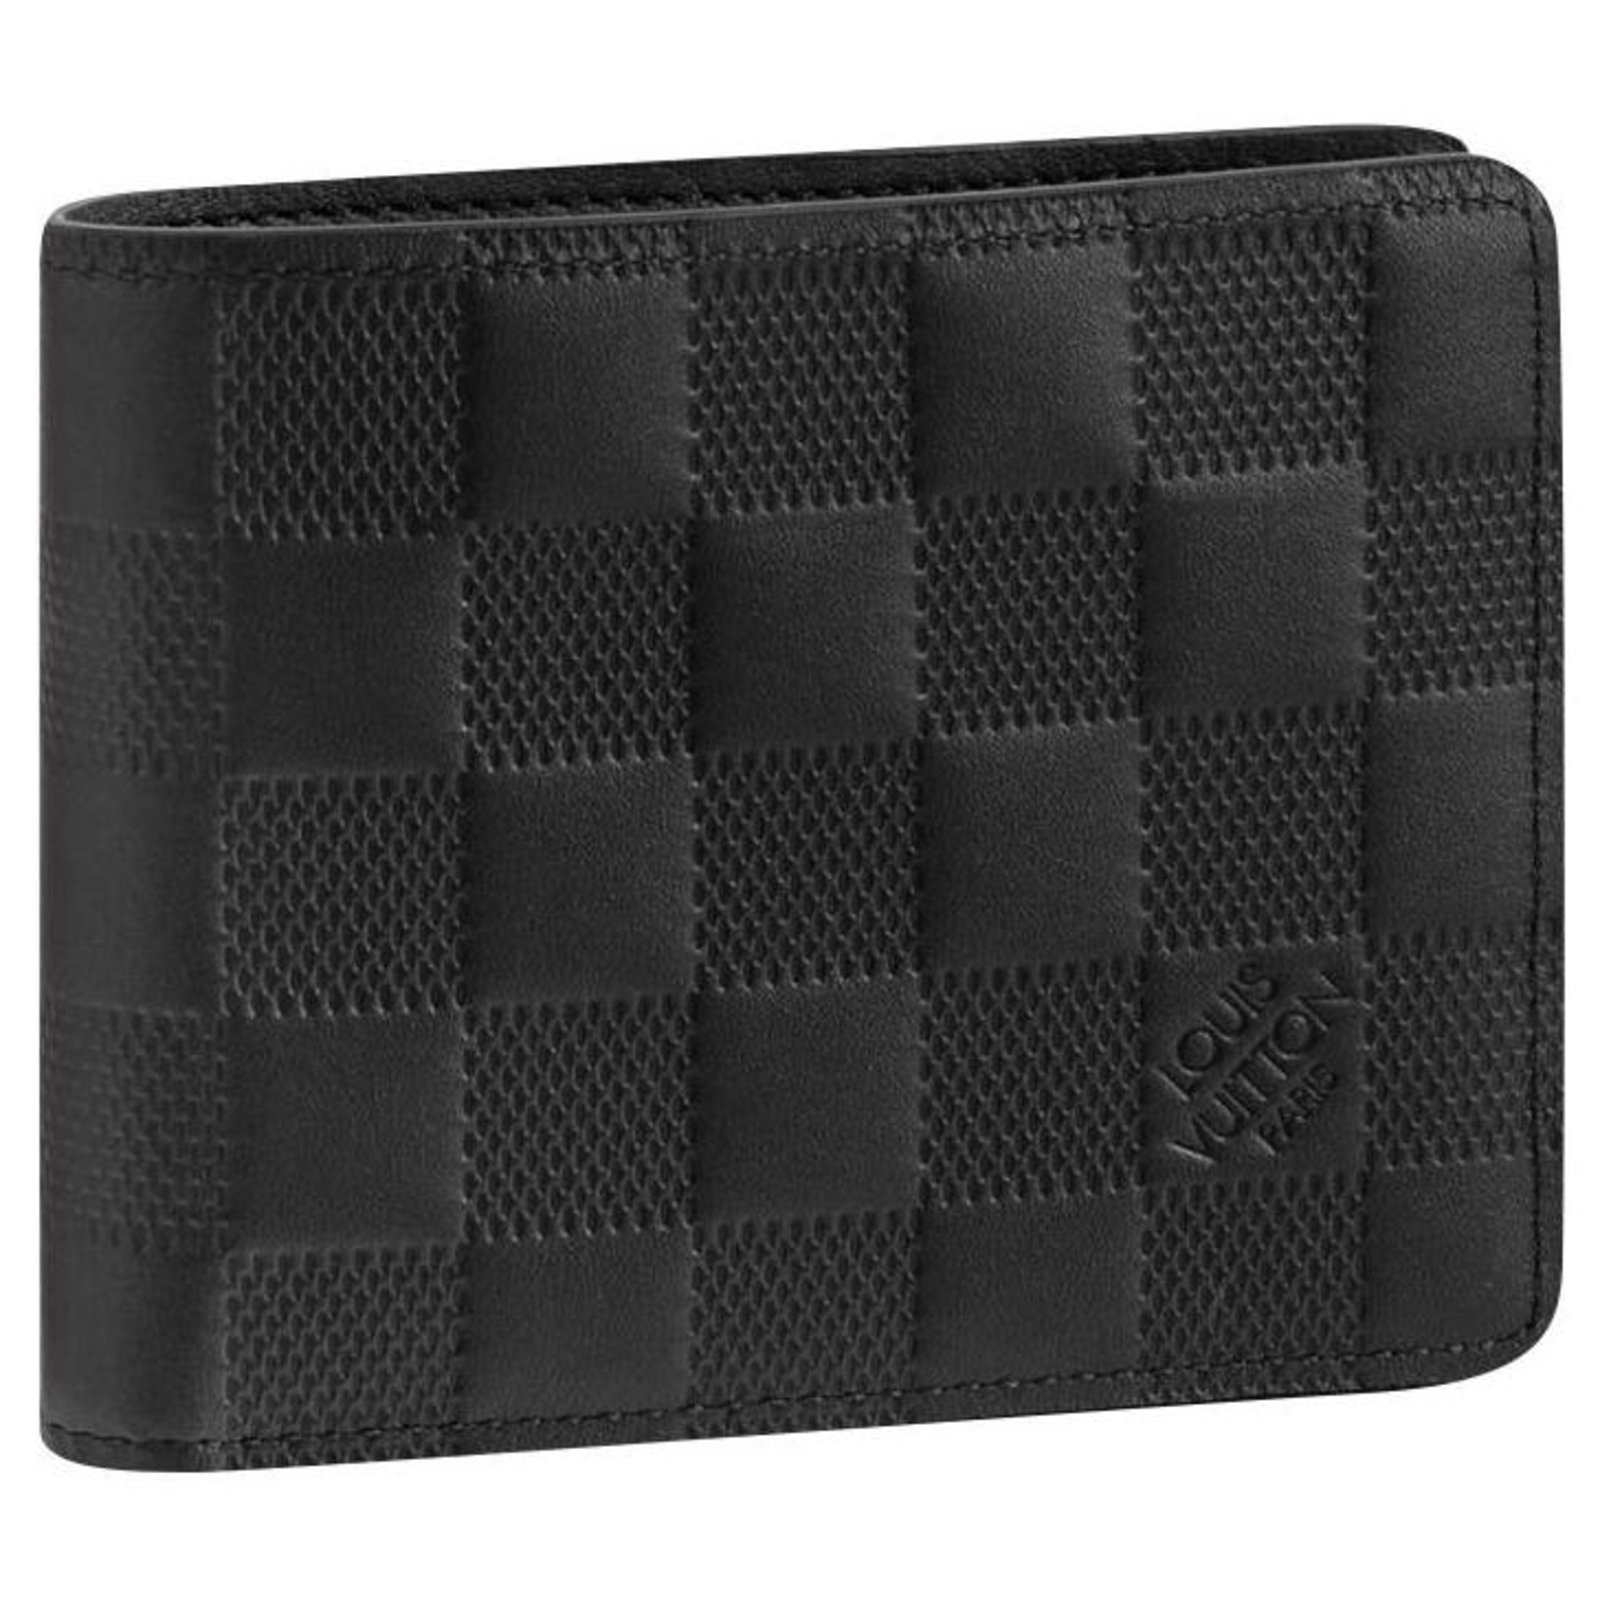 Louis Vuitton Leather Wallets for Men